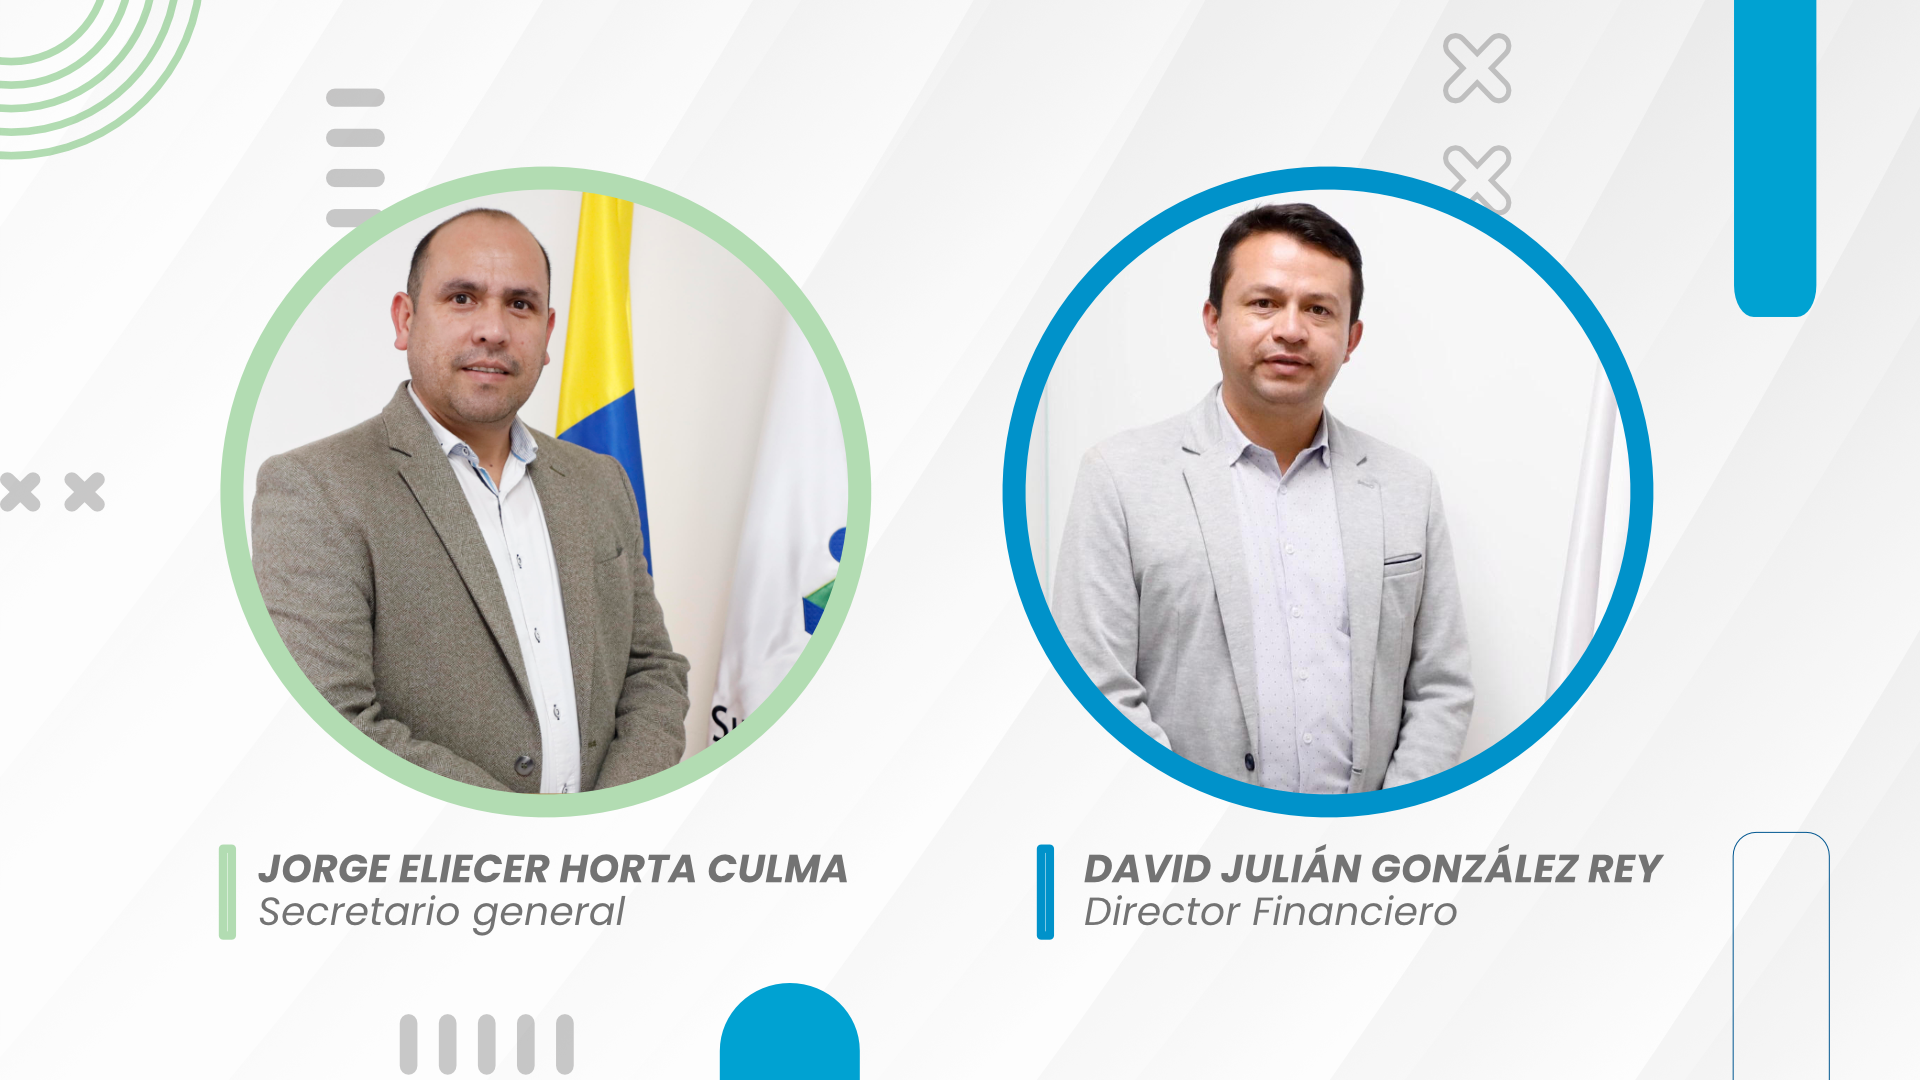 Nuevos directivos de la entidad,  Jorge Eliecer Horta Culma para la Secretaría General y Jorge Eliecer Horta Culma a la Dirección Financiera.